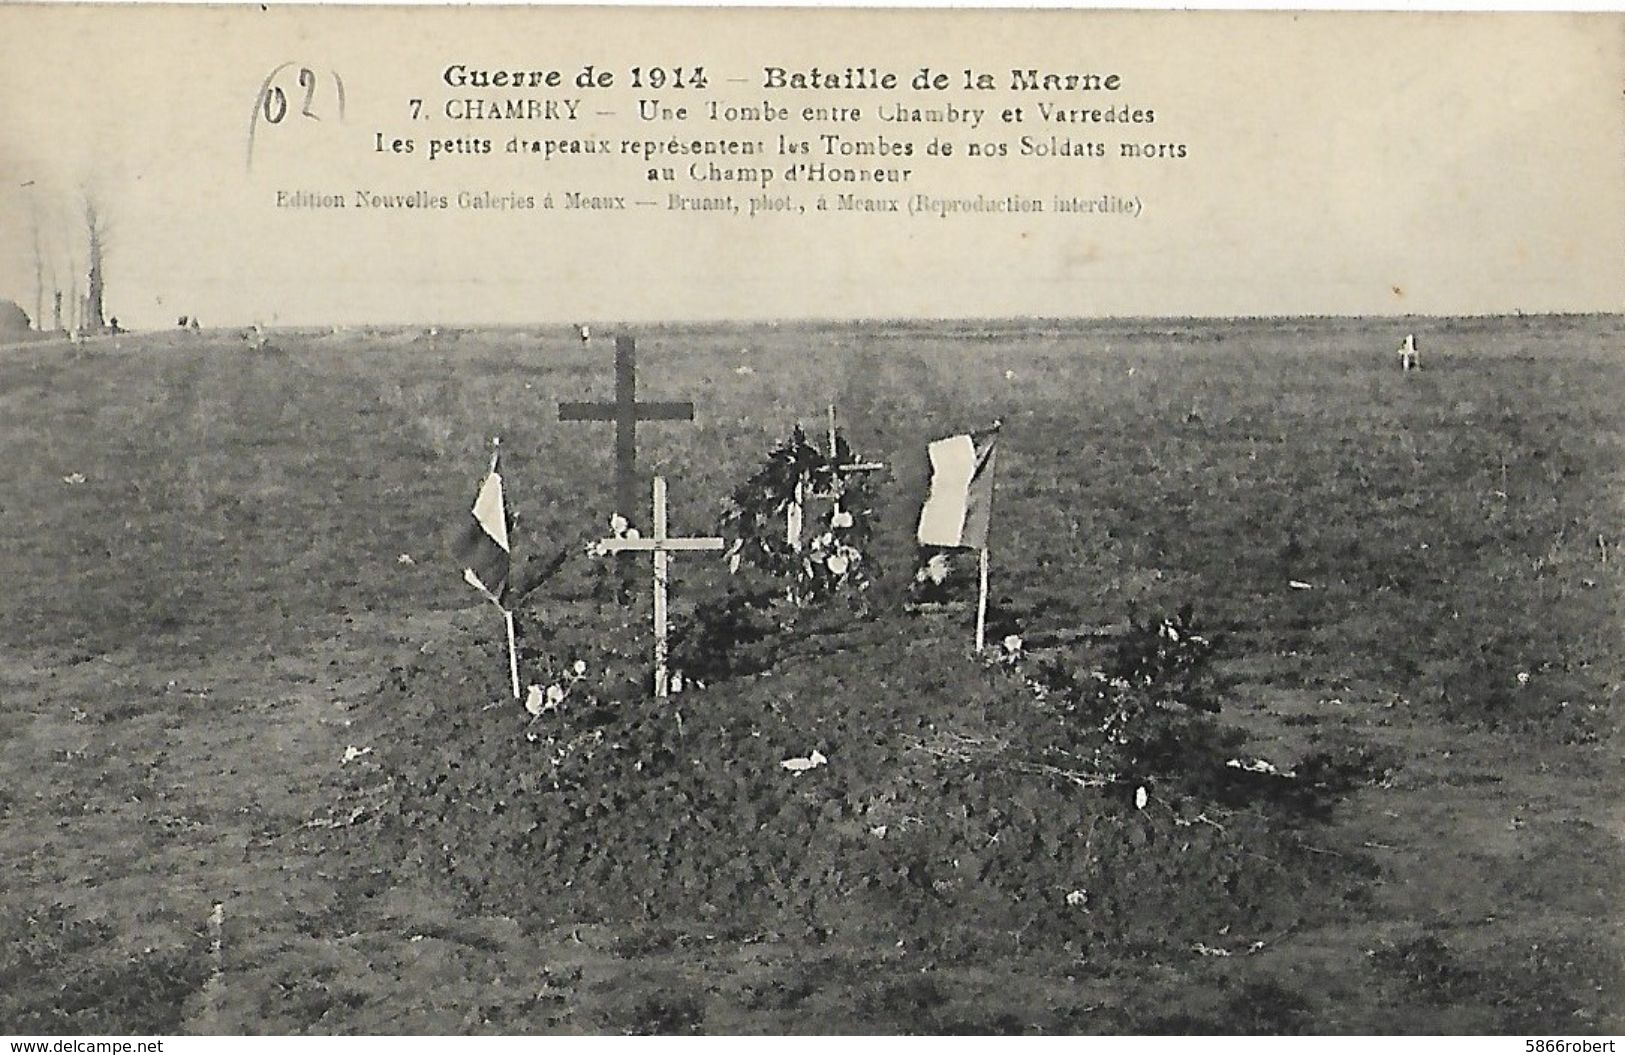 CARTE POSTALE ORIGINALE ANCIENNE : UNE TOMBE ENTRE CHAMBRY ET VARREDDES BATAILLE DE LA MARNE GUERRE 1914/1918 AISNE (02) - War Cemeteries